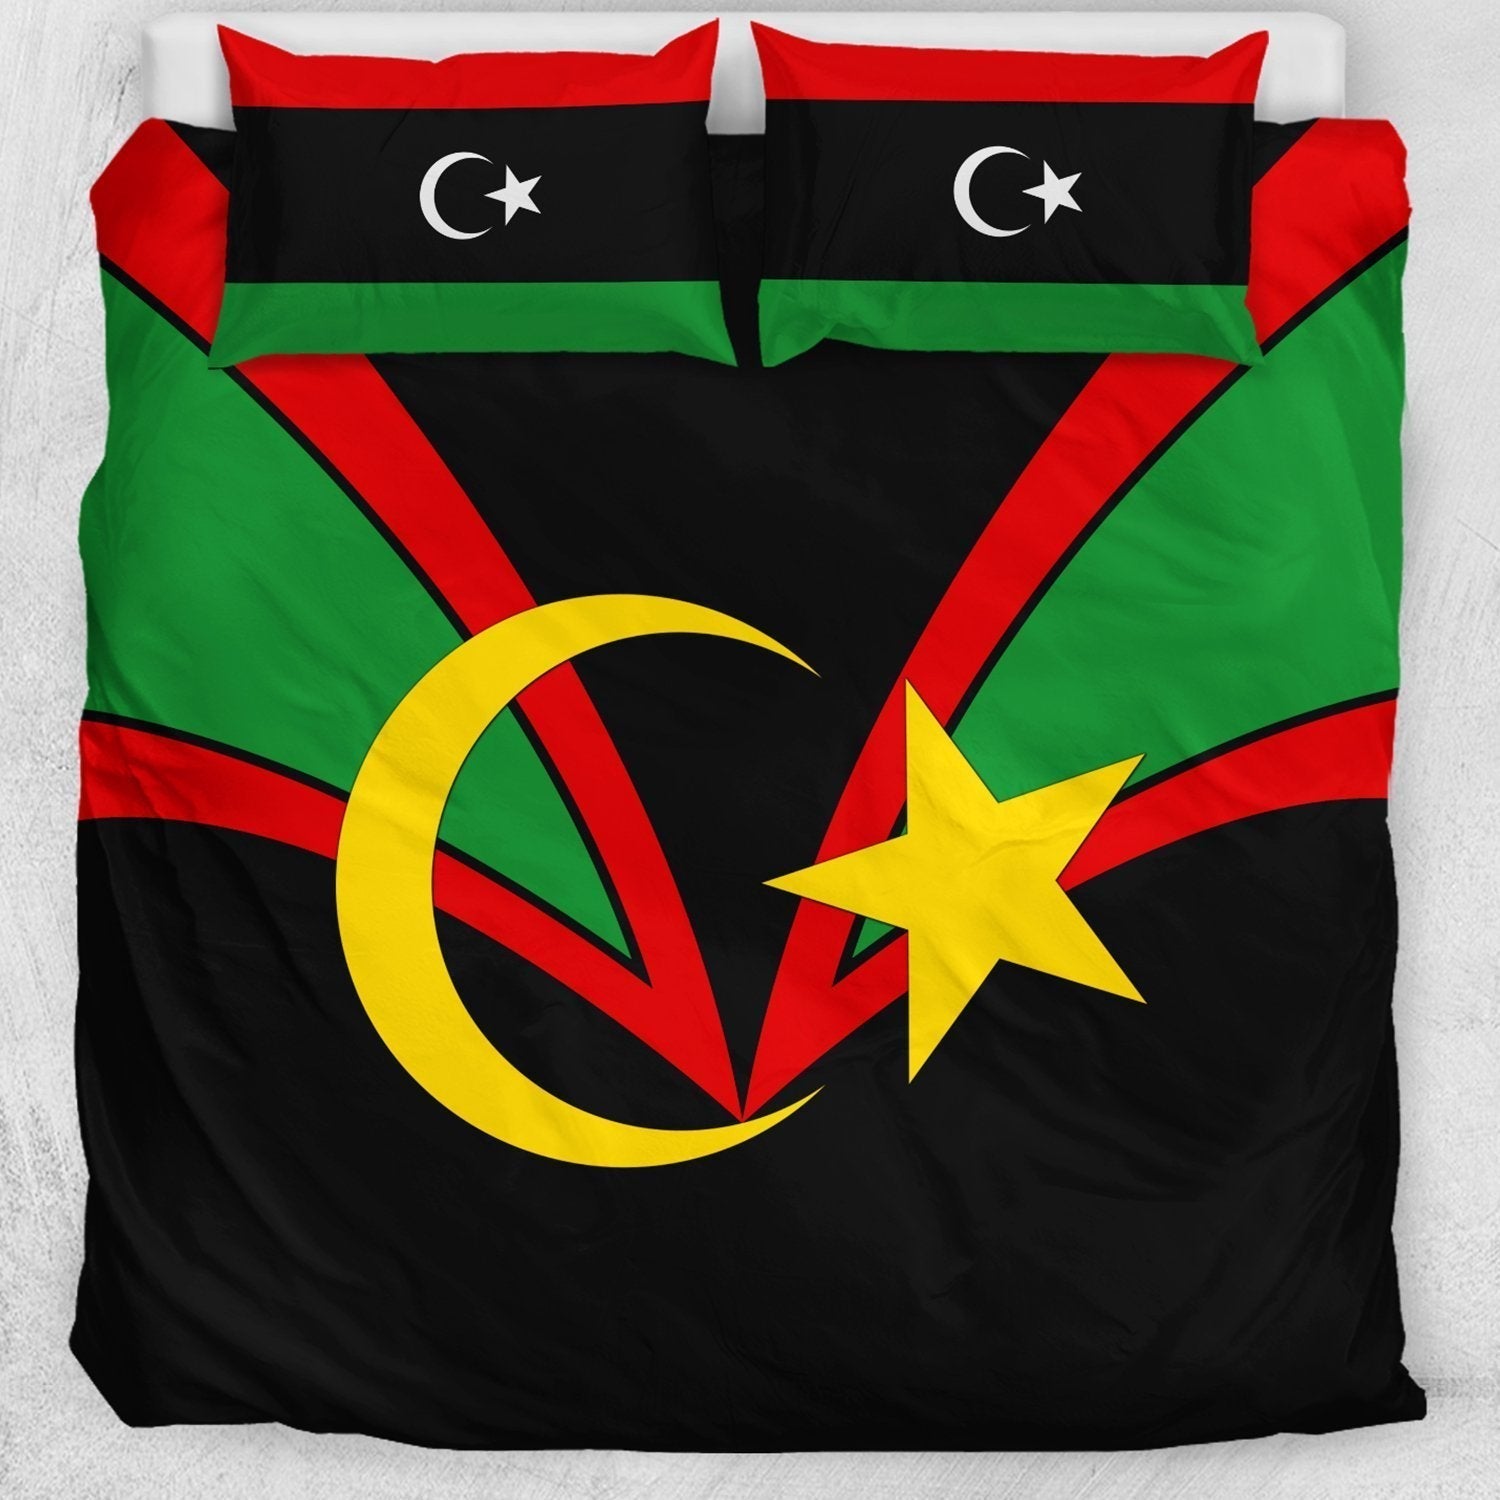 african-bedding-set-libya-duvet-cover-pillow-cases-tusk-style